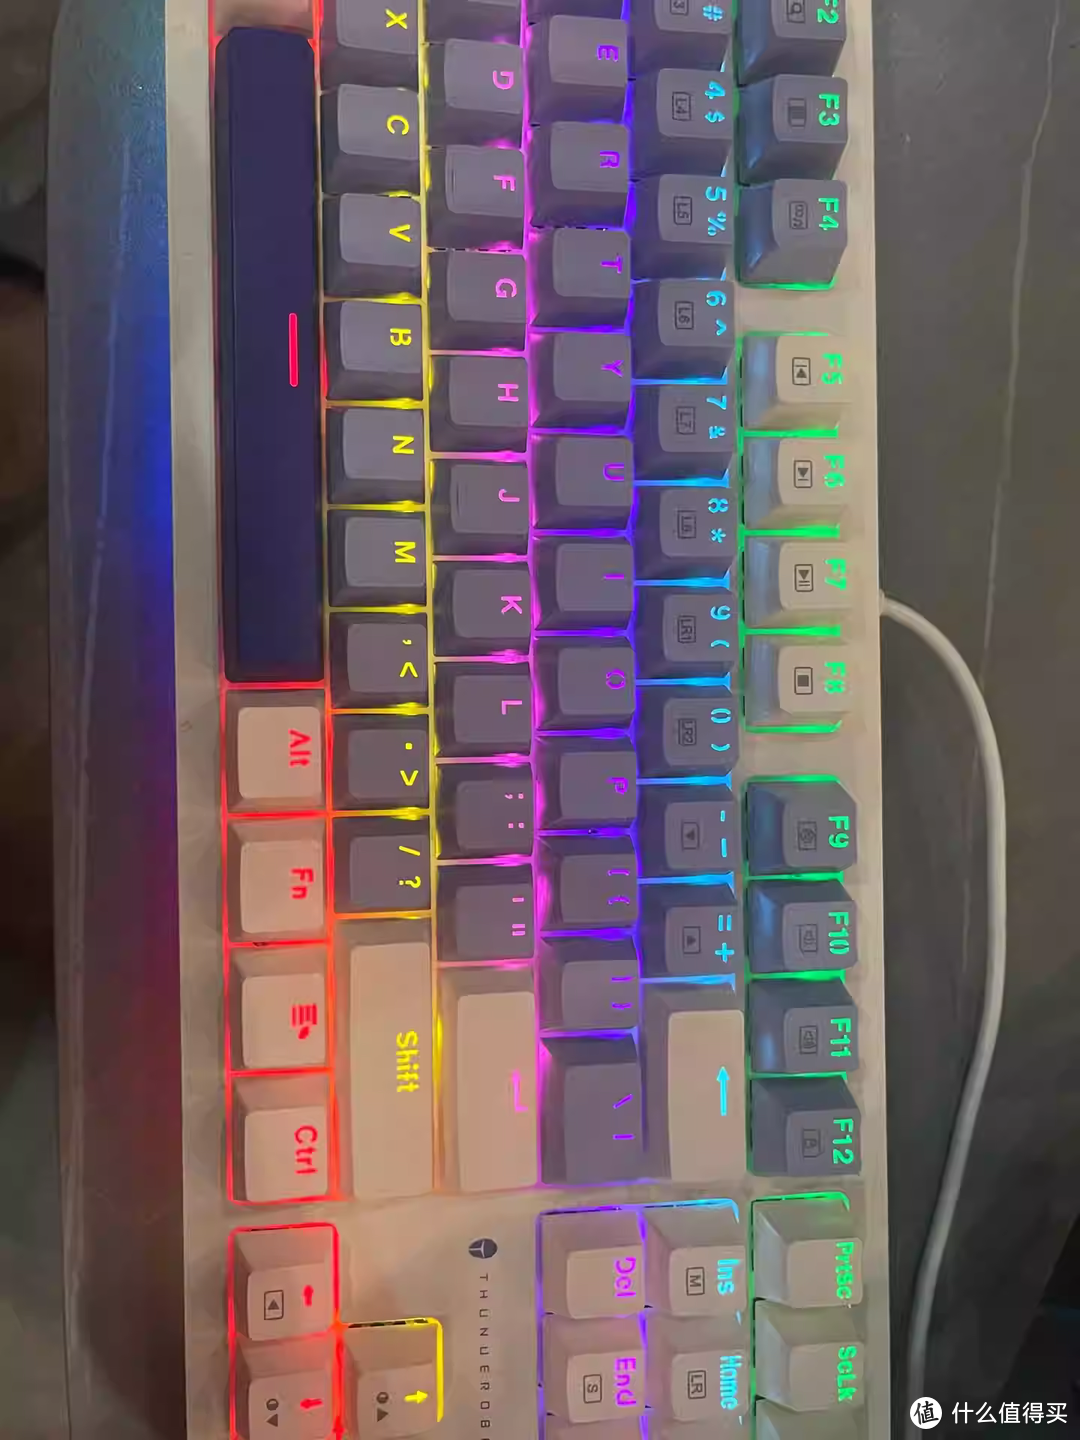 雷神K87机械键盘，这个配色可以，亮点是下边一排灯带，很有特色，同价位比较有个性的了